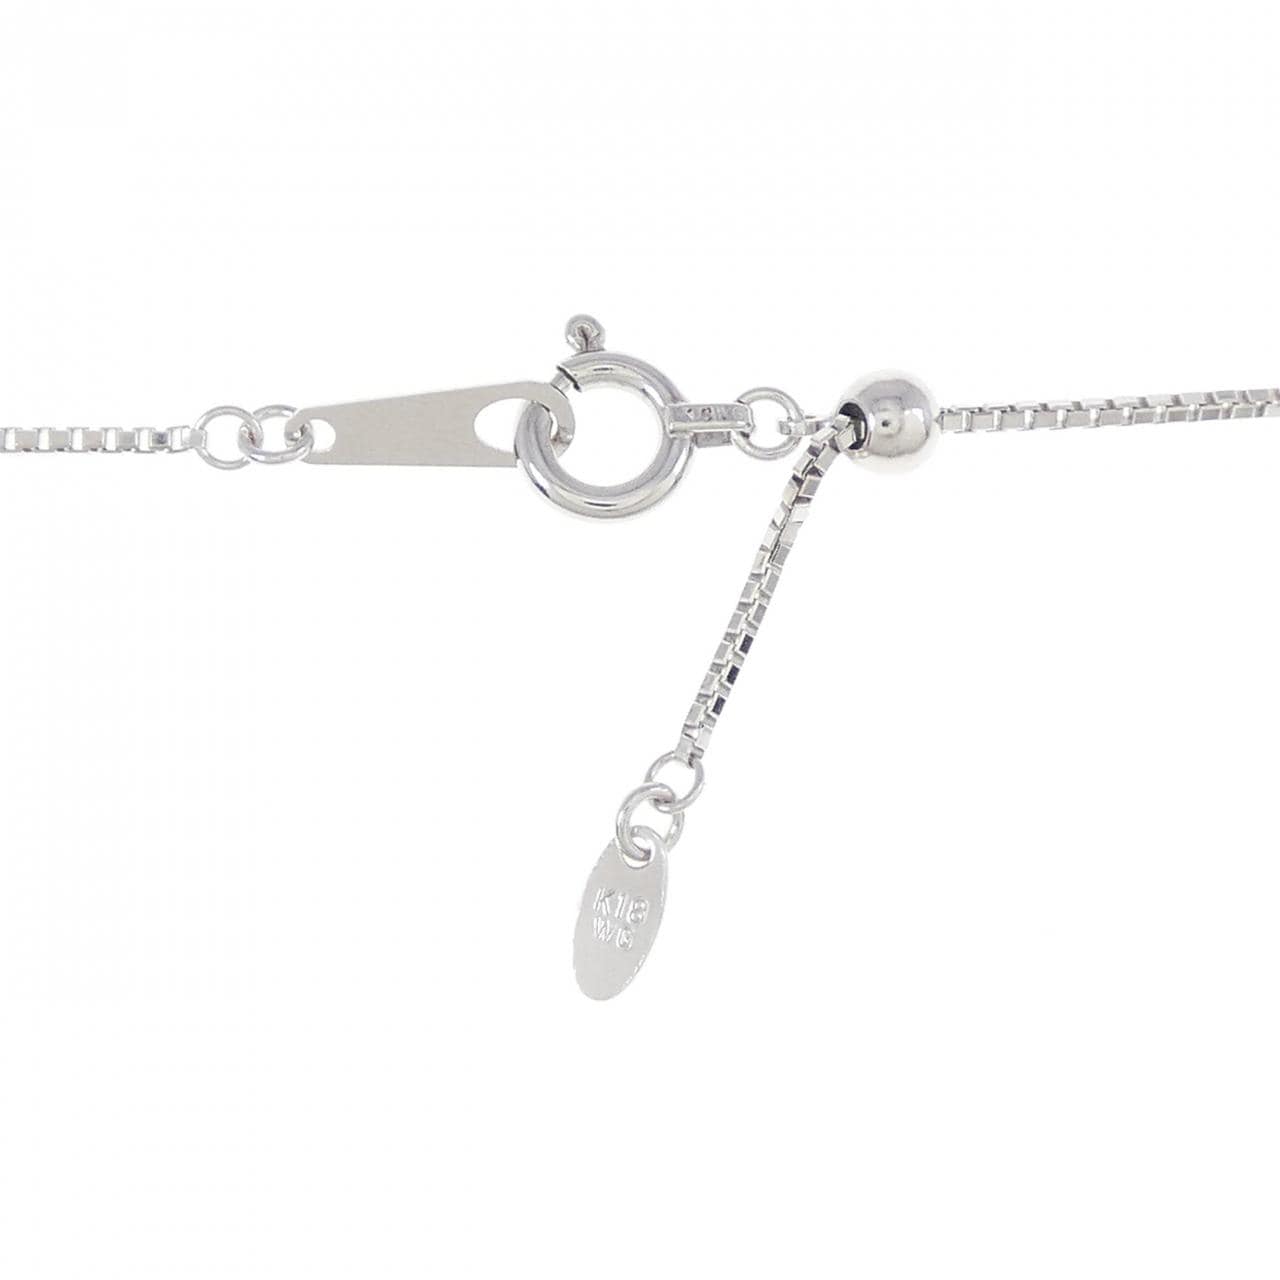 K18WG Tourmaline necklace 1.54CT